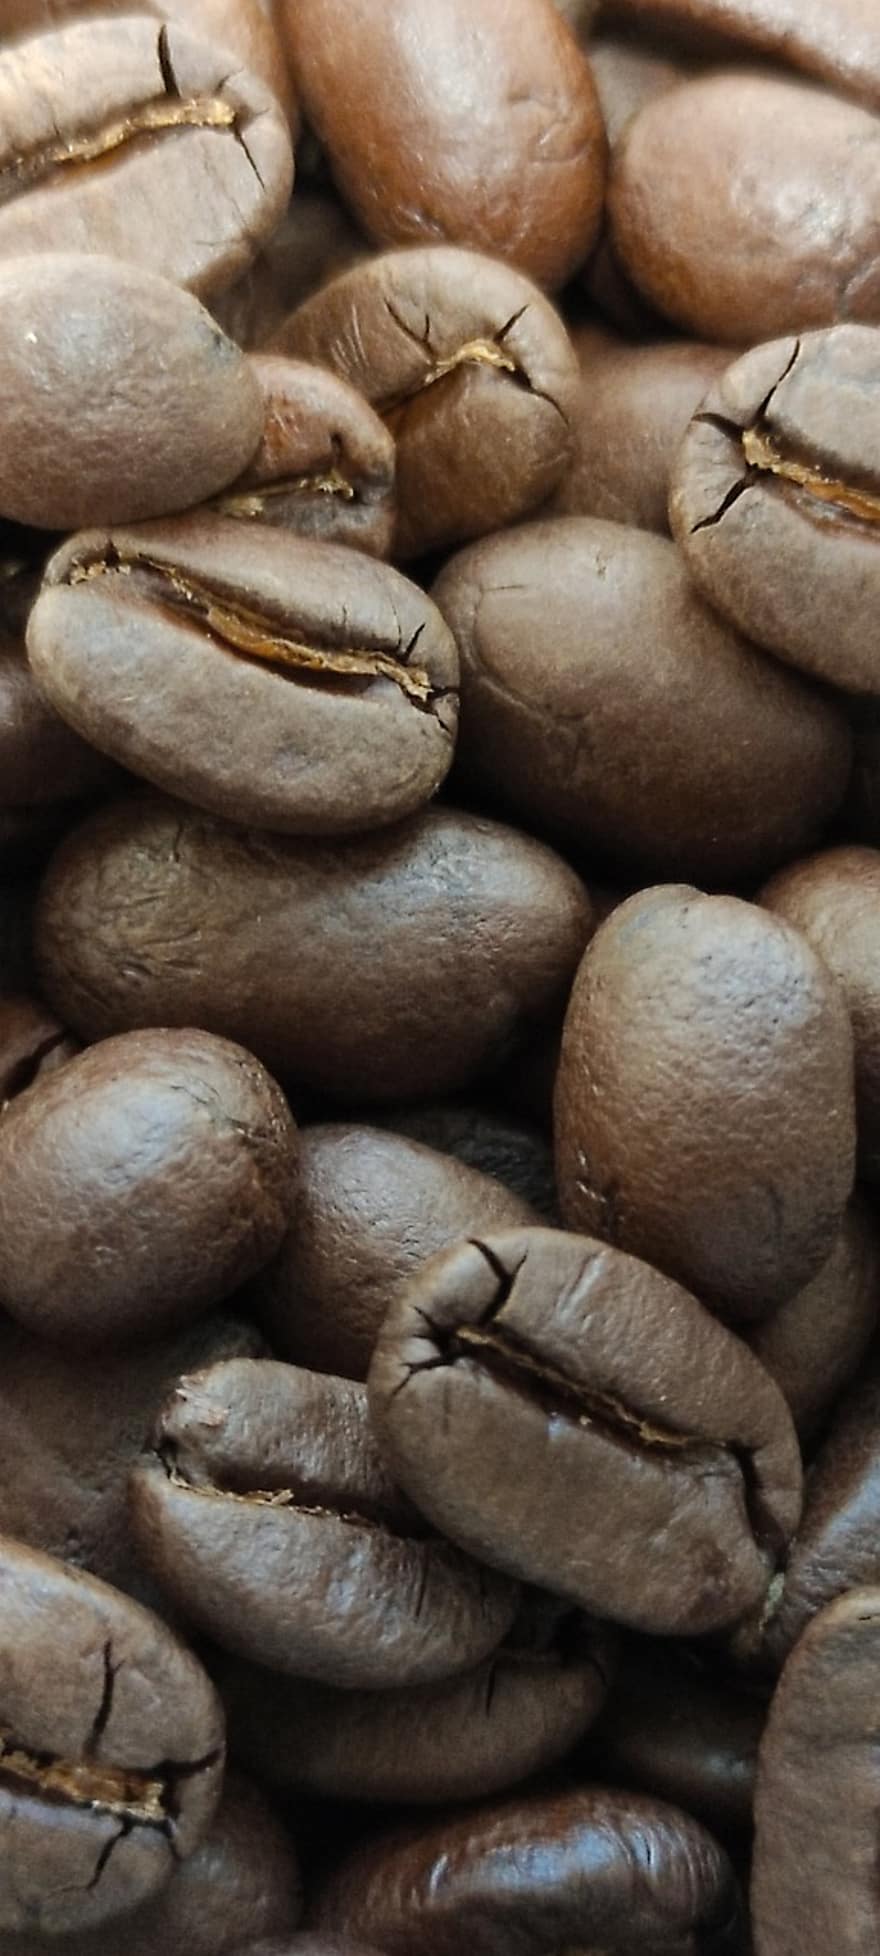 cà phê, đậu, rang, cà phê espresso, cận cảnh, hạt đậu, cafein, vĩ mô, tầng lớp, hạt giống, uống